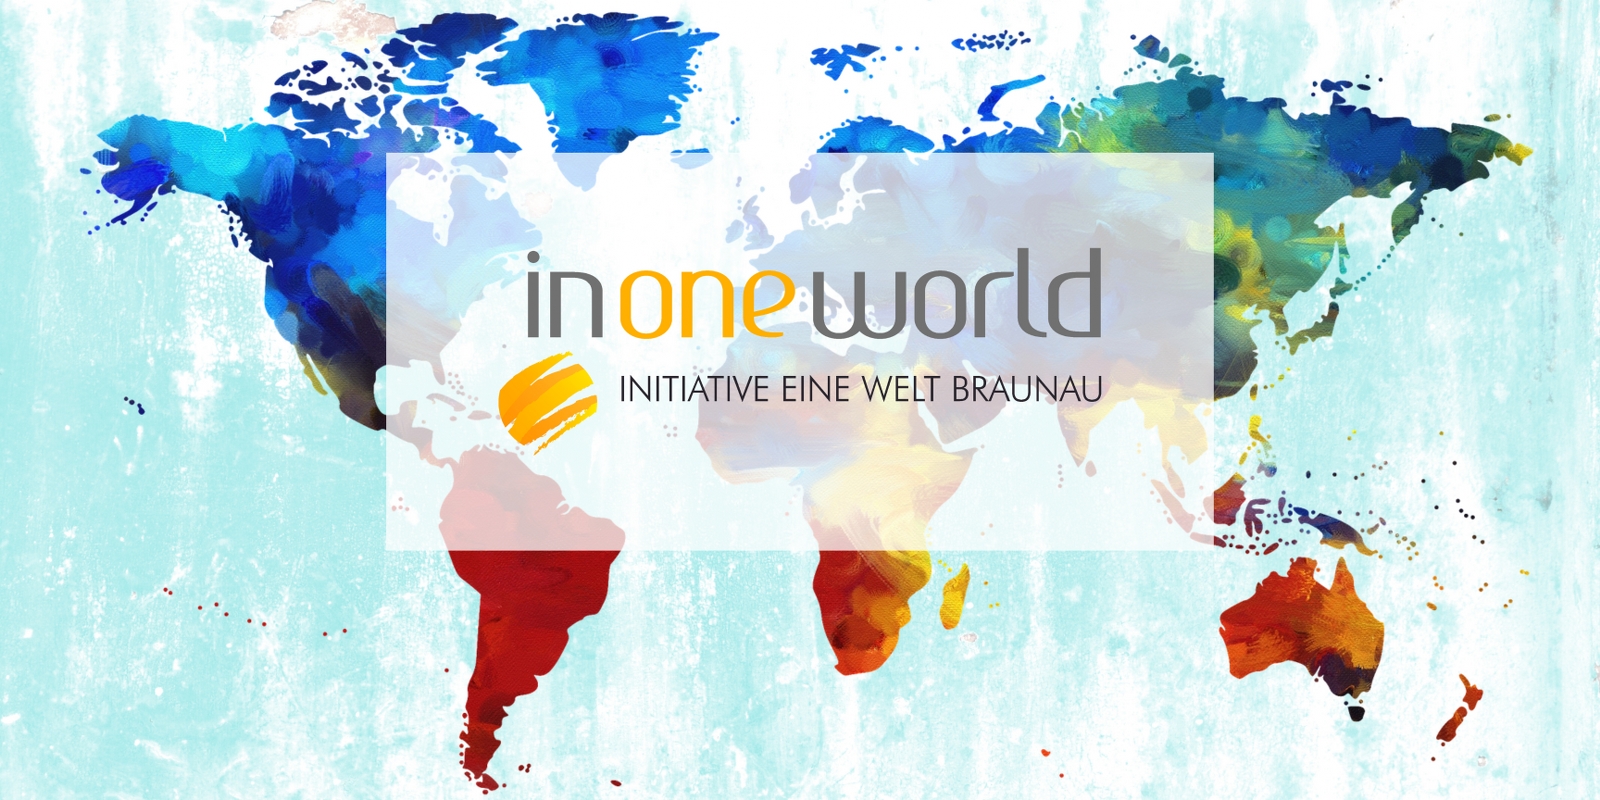 Homepage Initiative Eine Welt